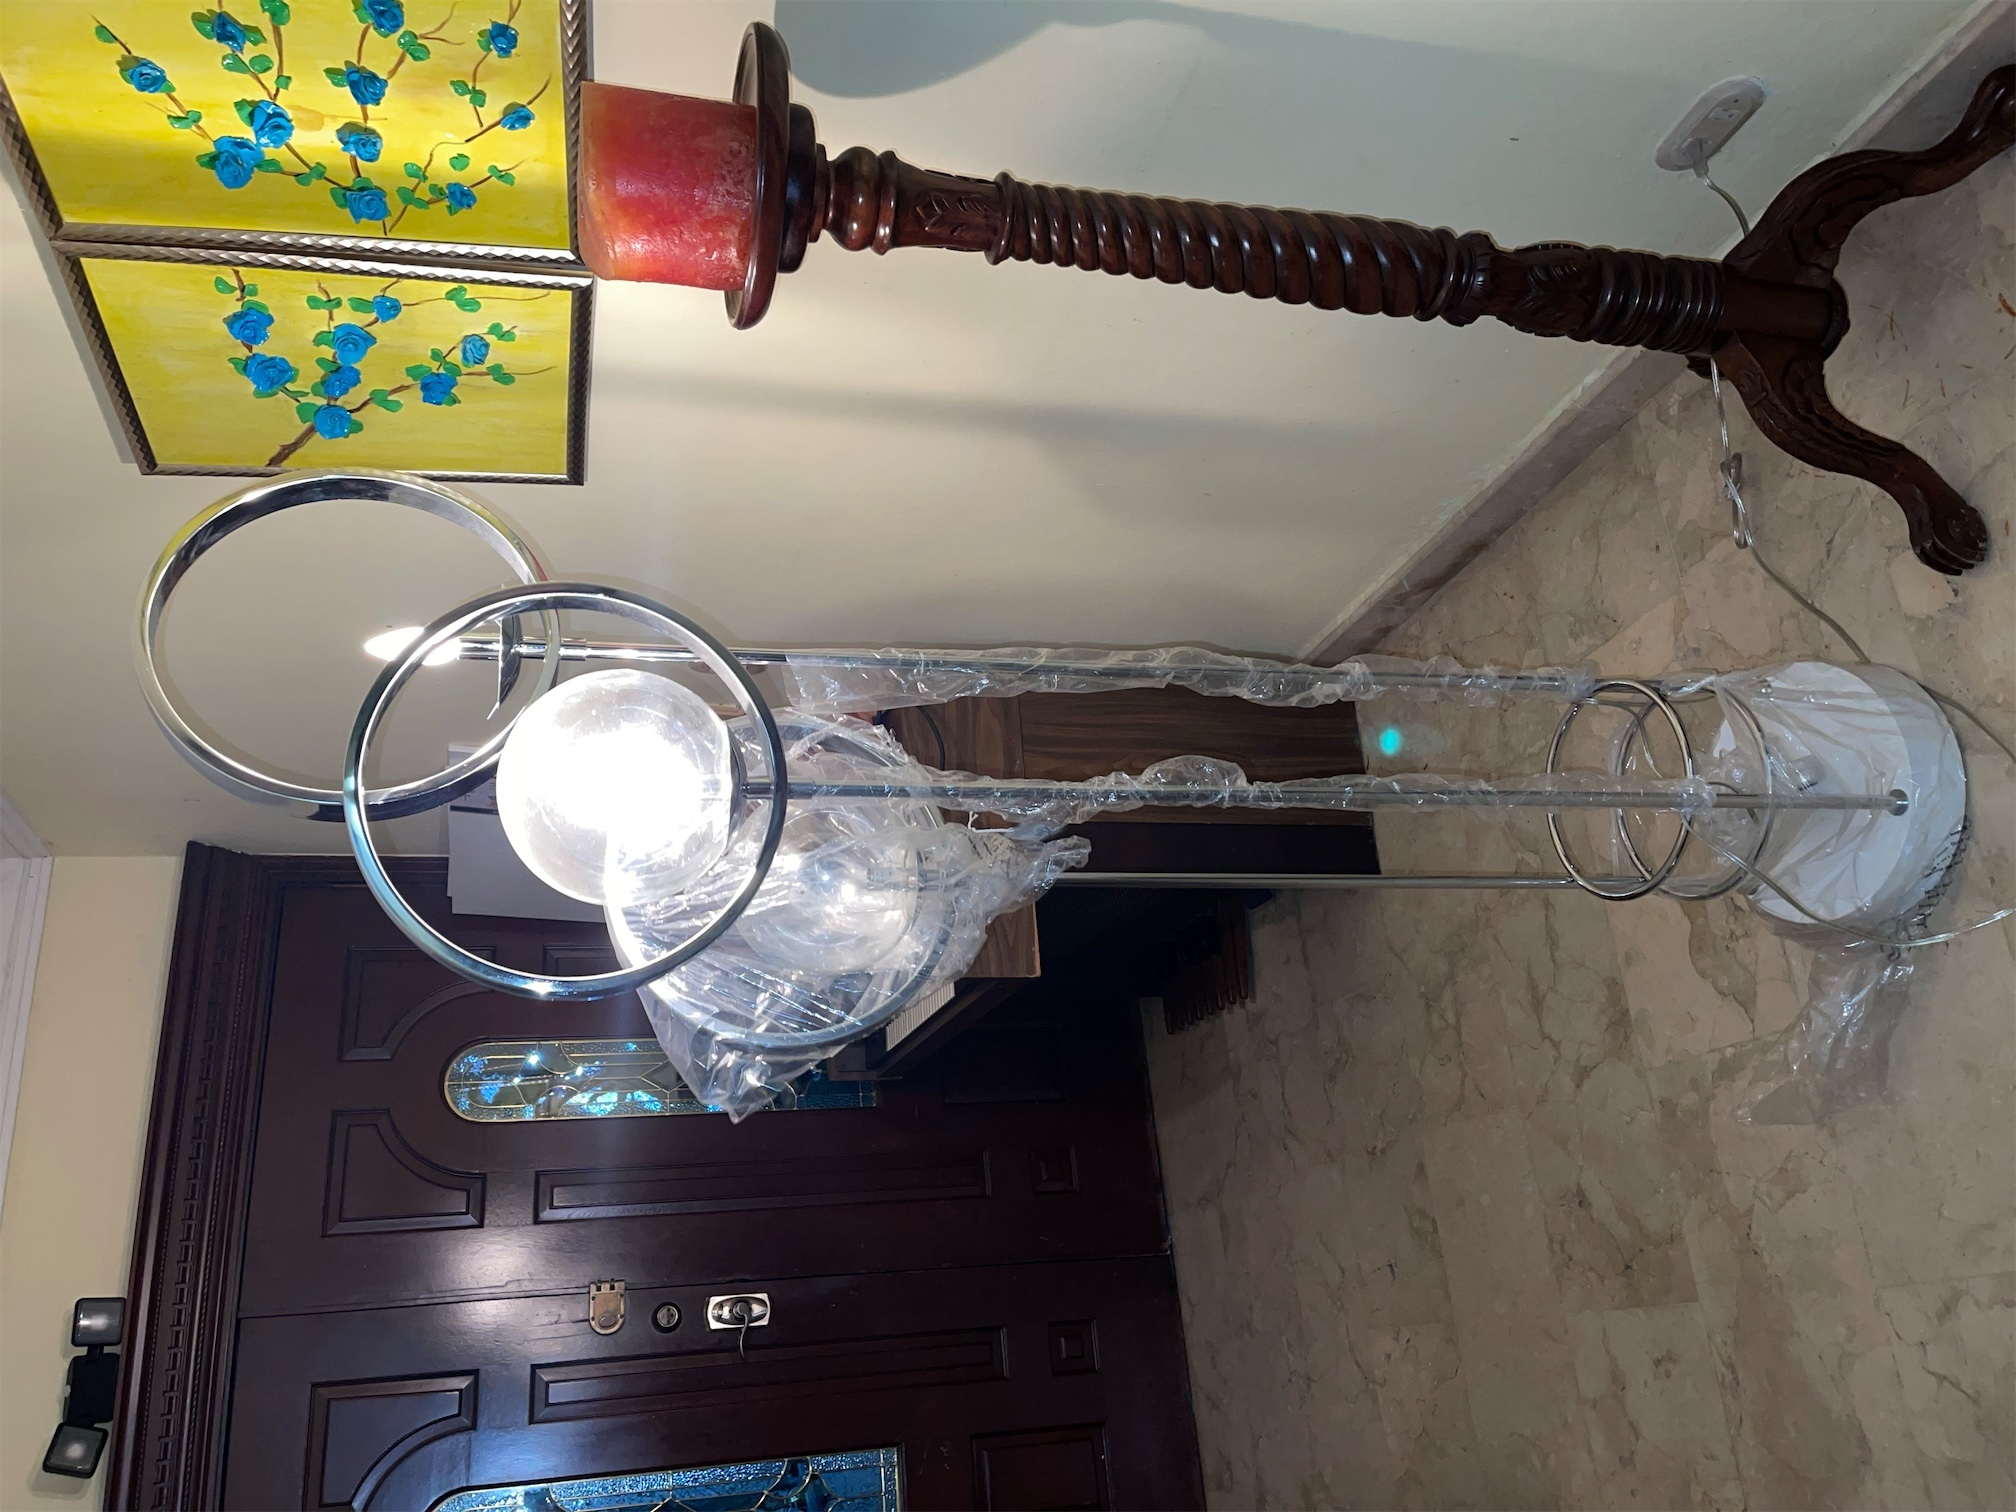 decoración y accesorios - Vendo lámpara lujosa nueva.